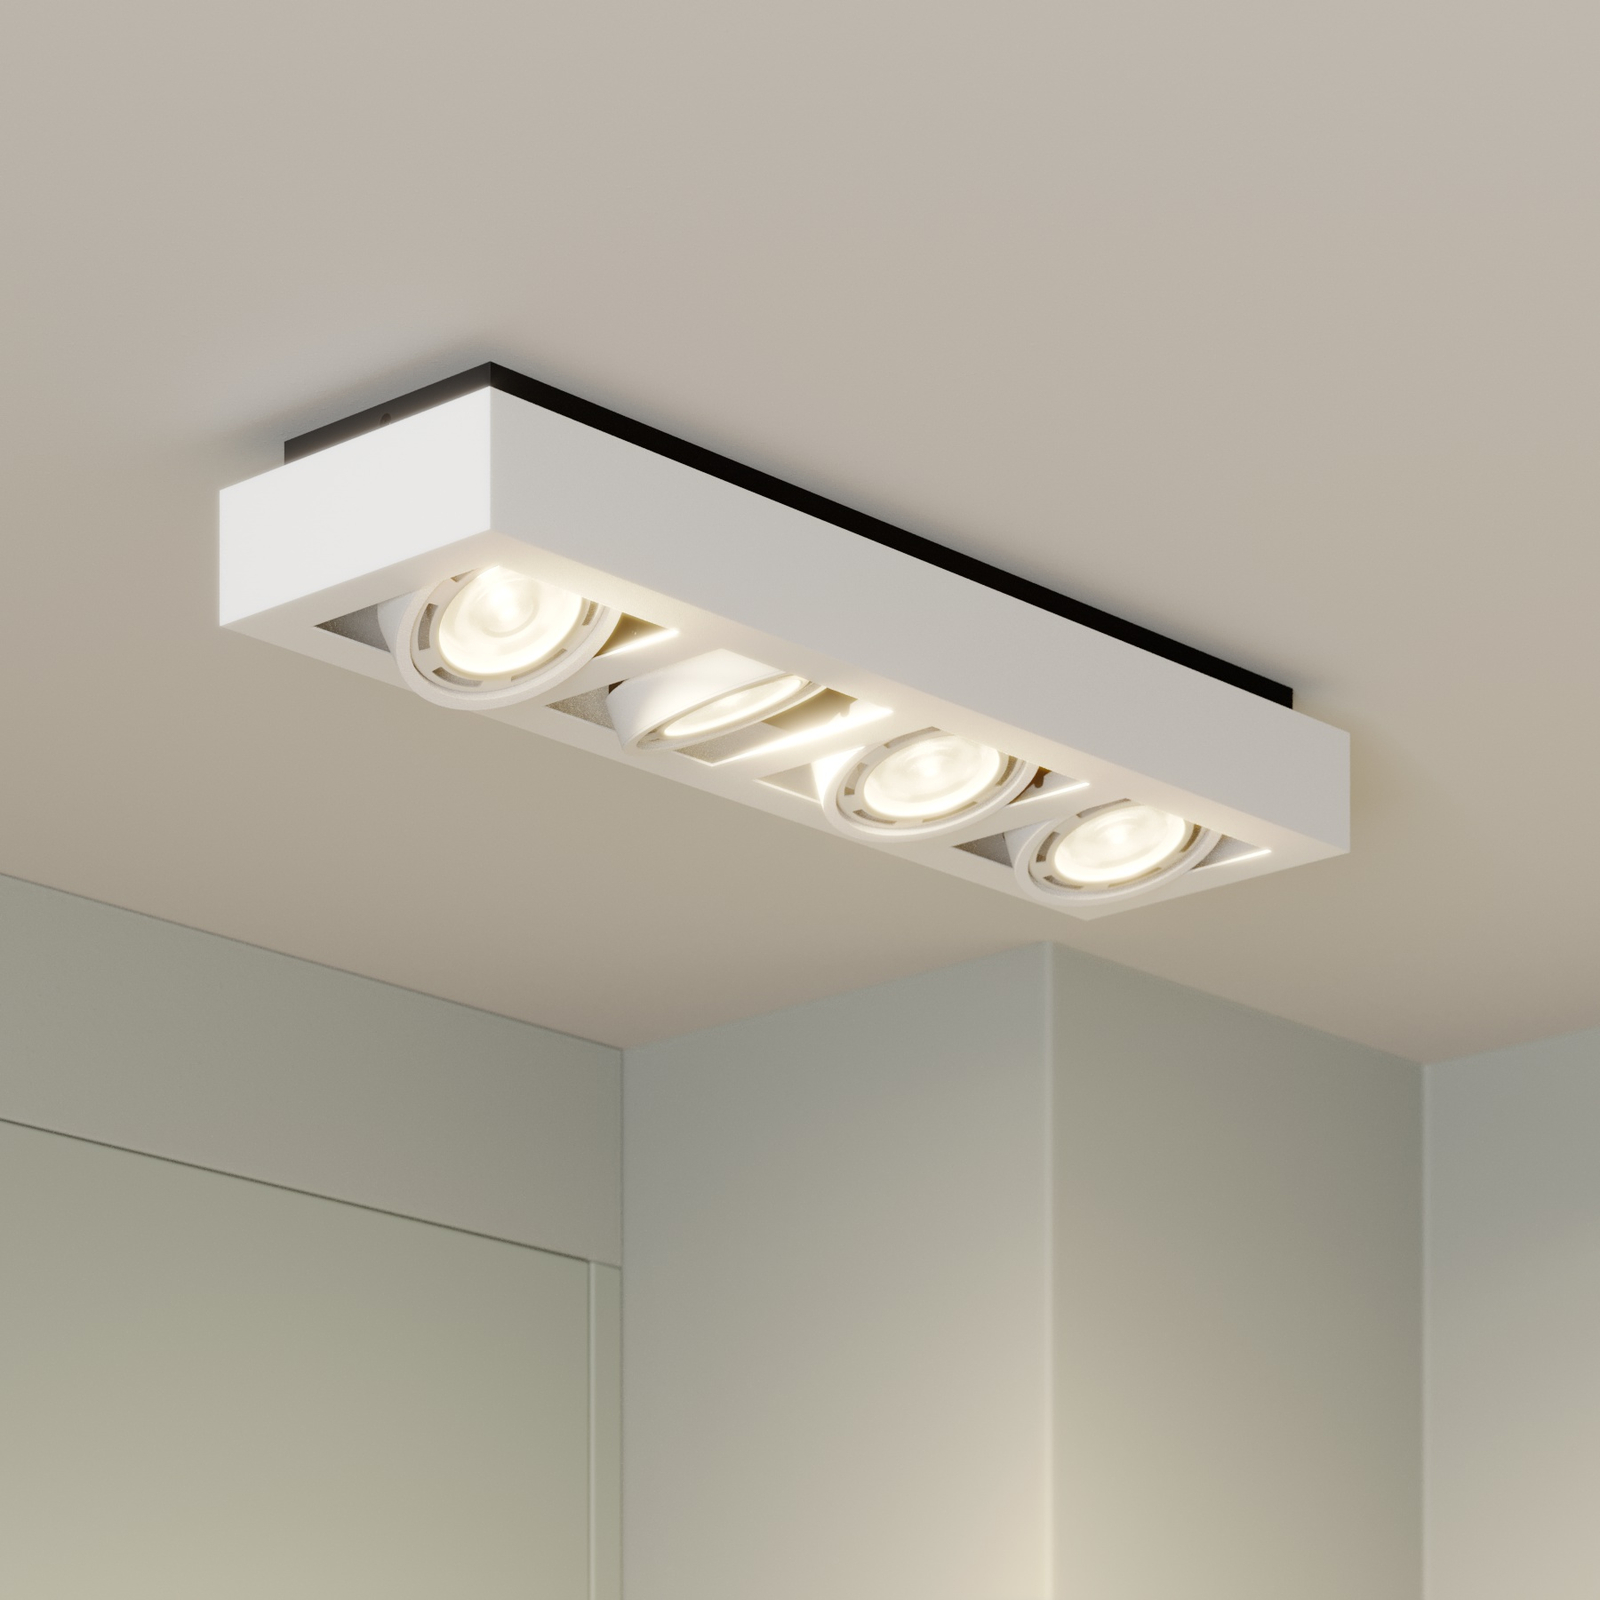 Spot plafond LED Ronka, 4 lampes, allongé, blanc